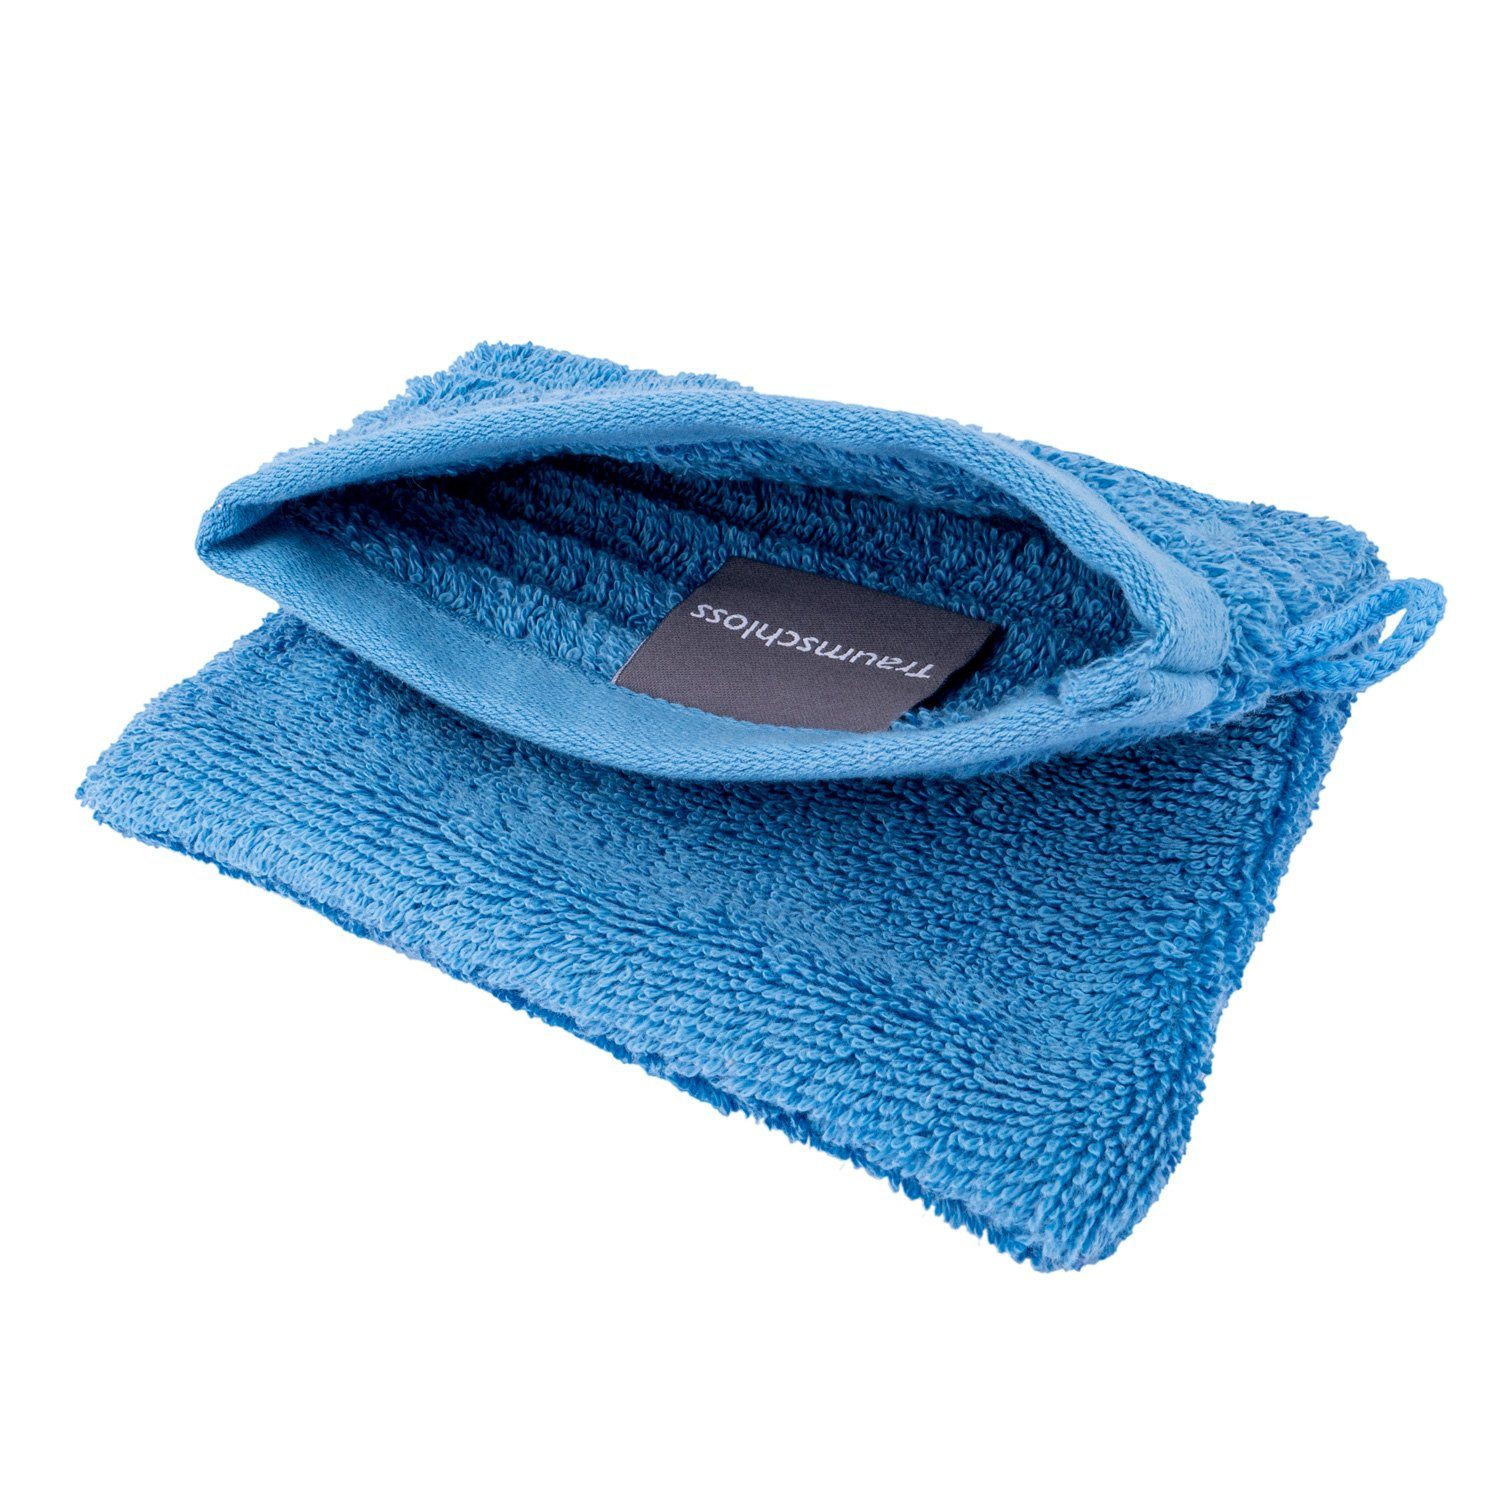 Supima Baumwolle blau (1-tlg), amerikanische 100% mit Waschlappen Traumschloss 600g/m² Premium-Line nordic